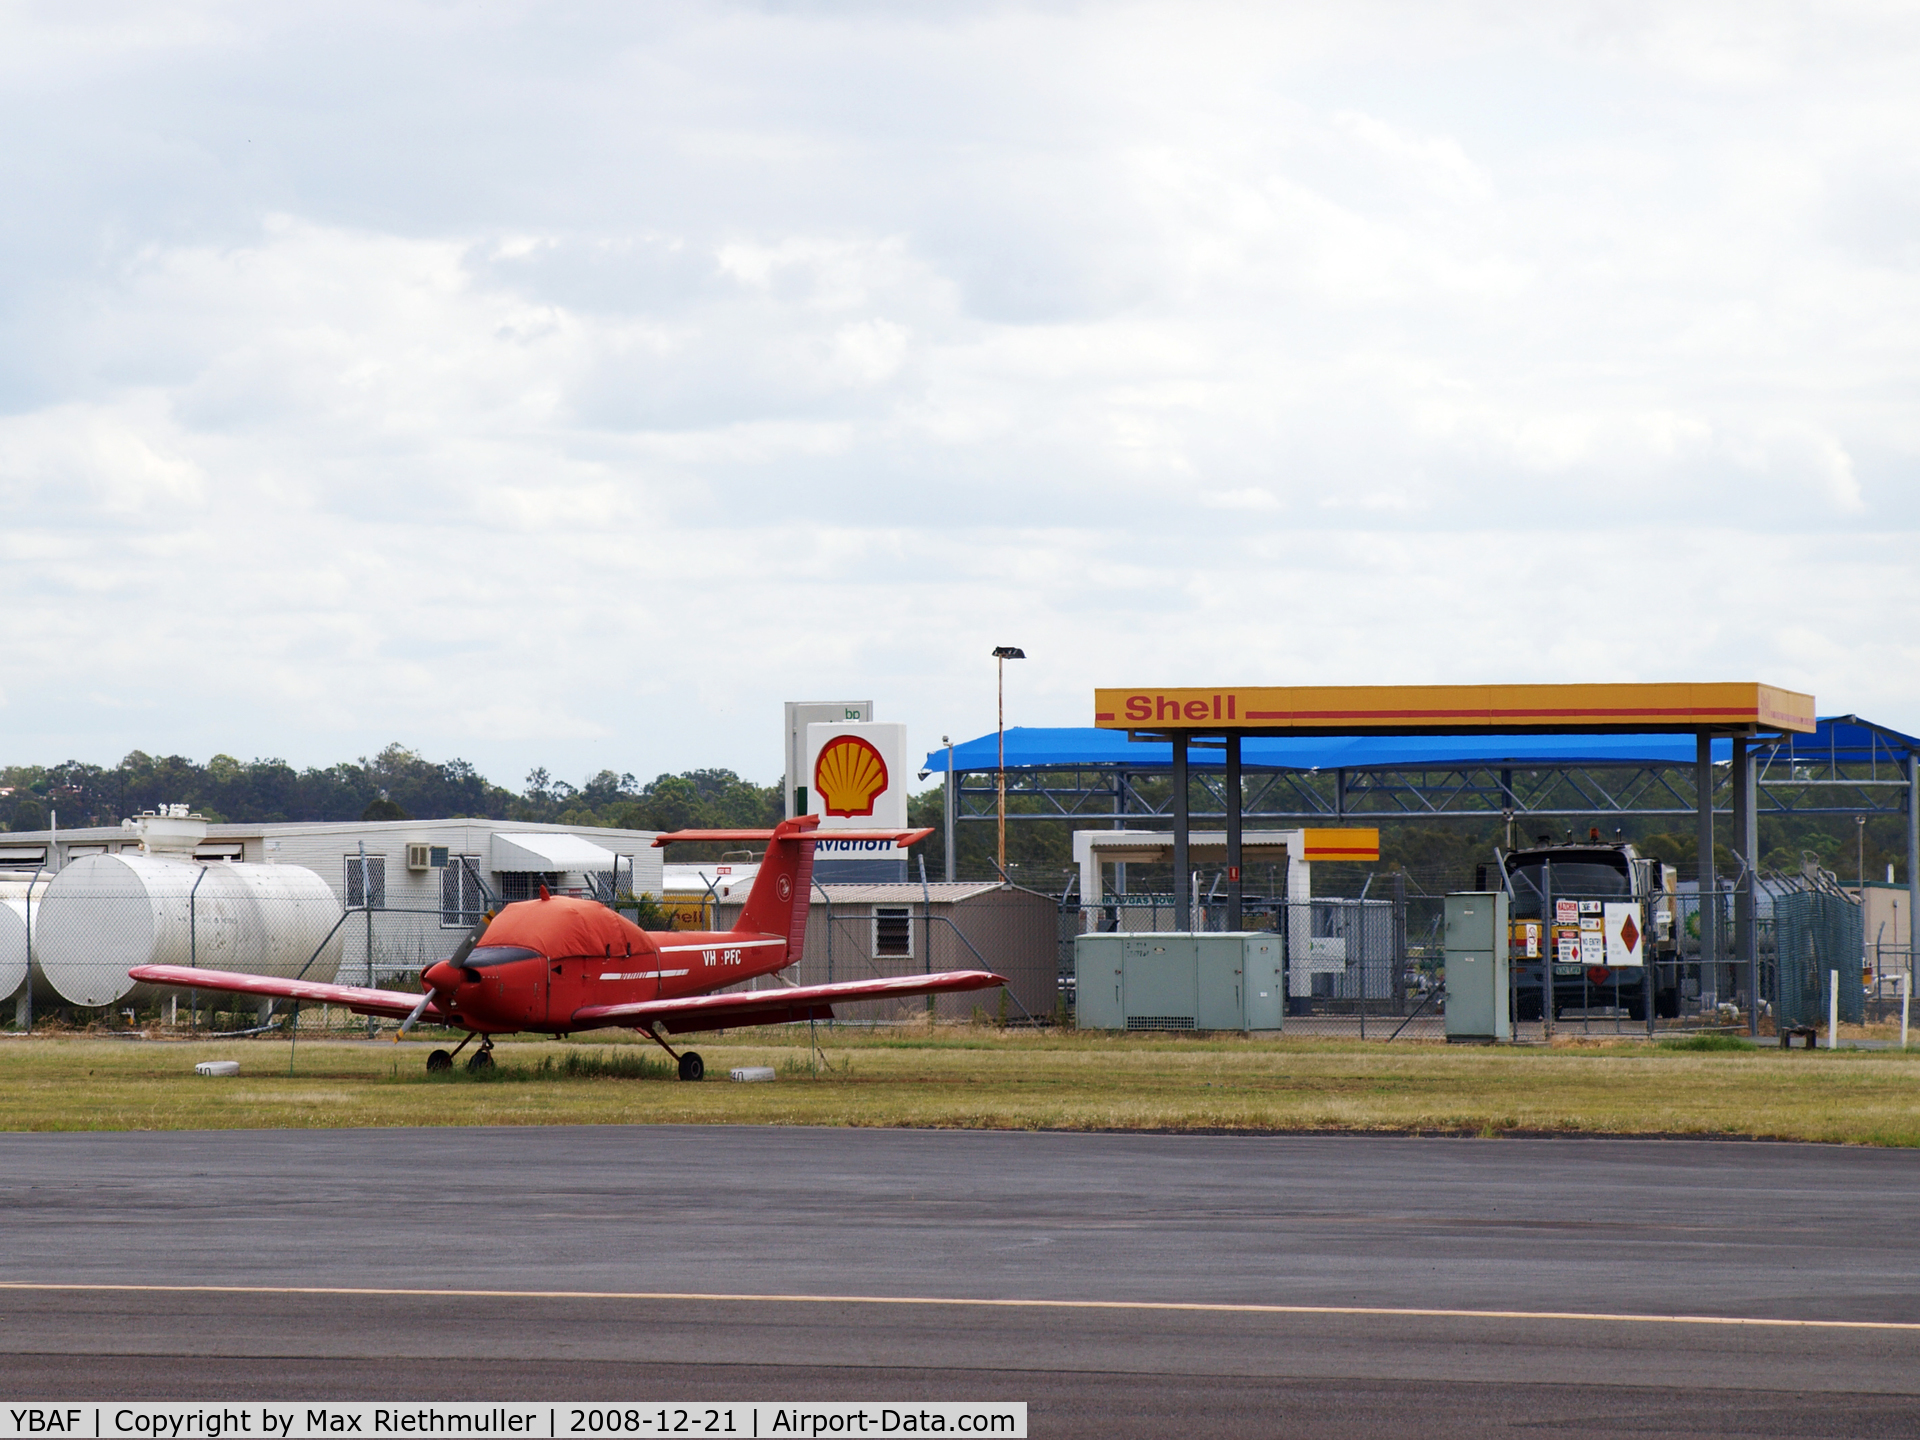 Archerfield Airport, Archerfield, Queensland Australia (YBAF) - Archerfield Airport Brisbane Fuel Depot